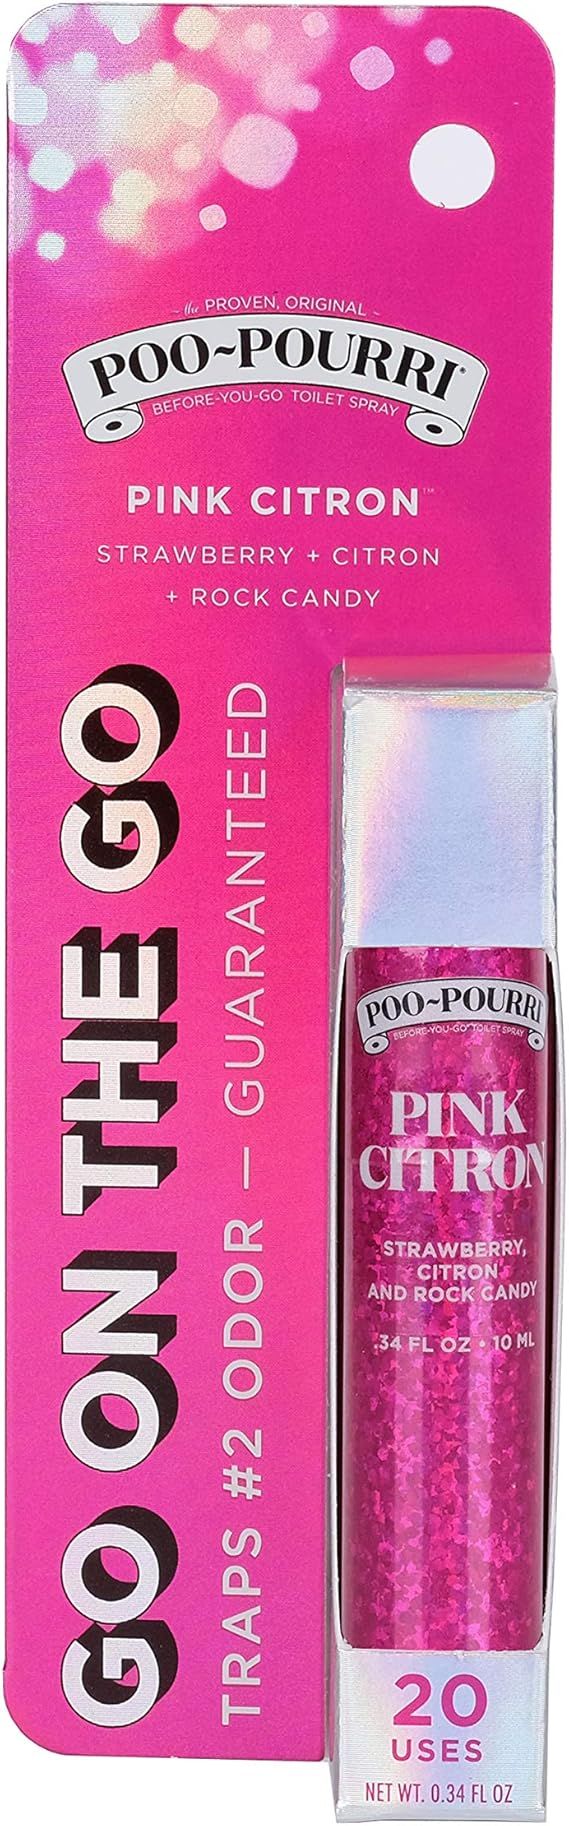 Poo-Pourri Before-You-go Toilet Spray, Pink Citron Scent, 0.34 Fl Oz | Amazon (US)